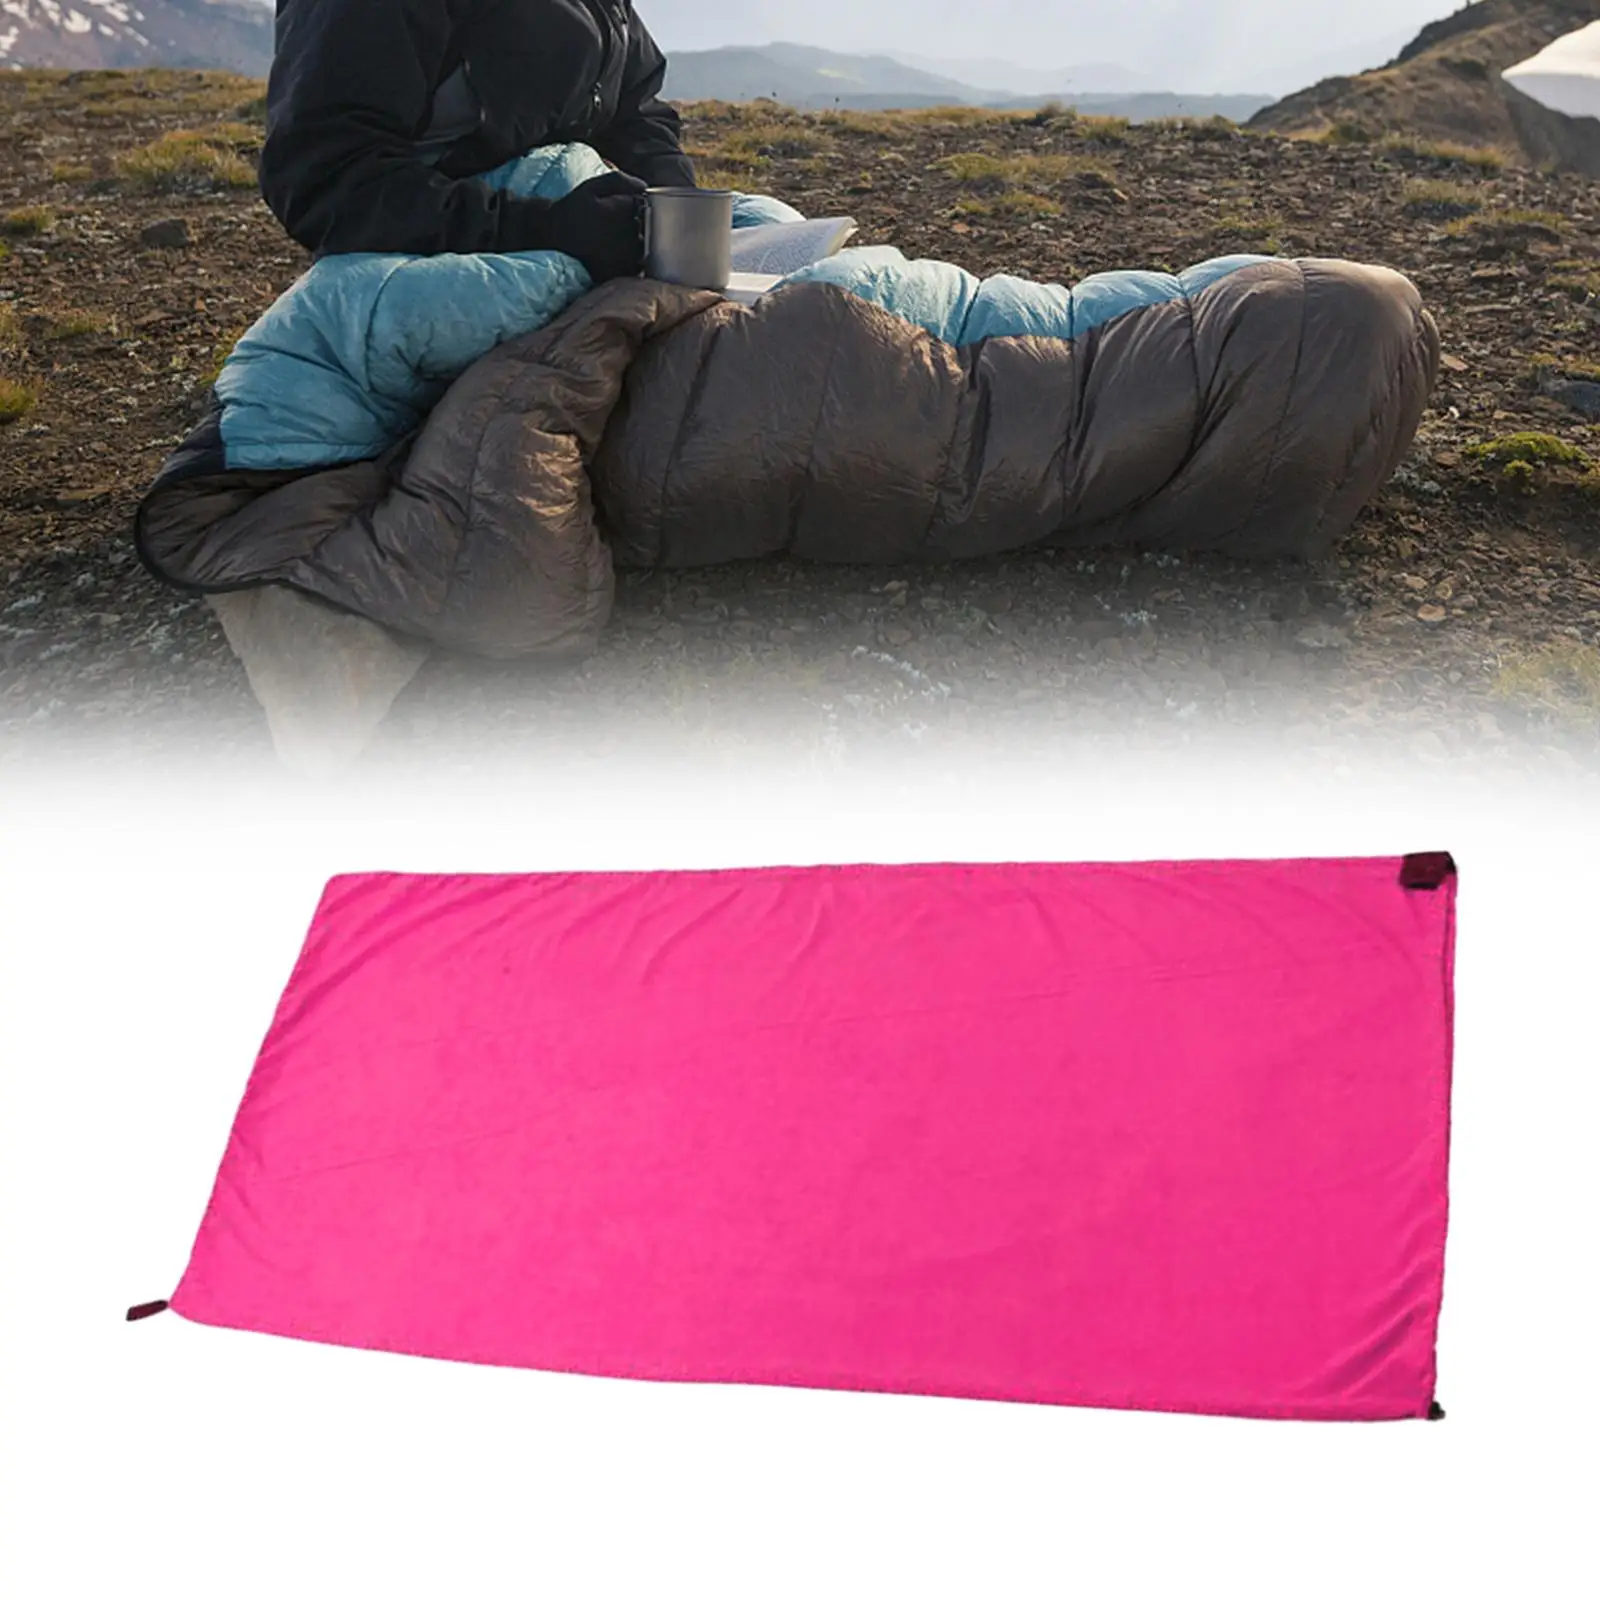 Fleece Sleeping Bag Liner Blanket Liner Comfortable Thermal Warm Sleeping Bag for Sport Hotel Camping Outdoor Activities 